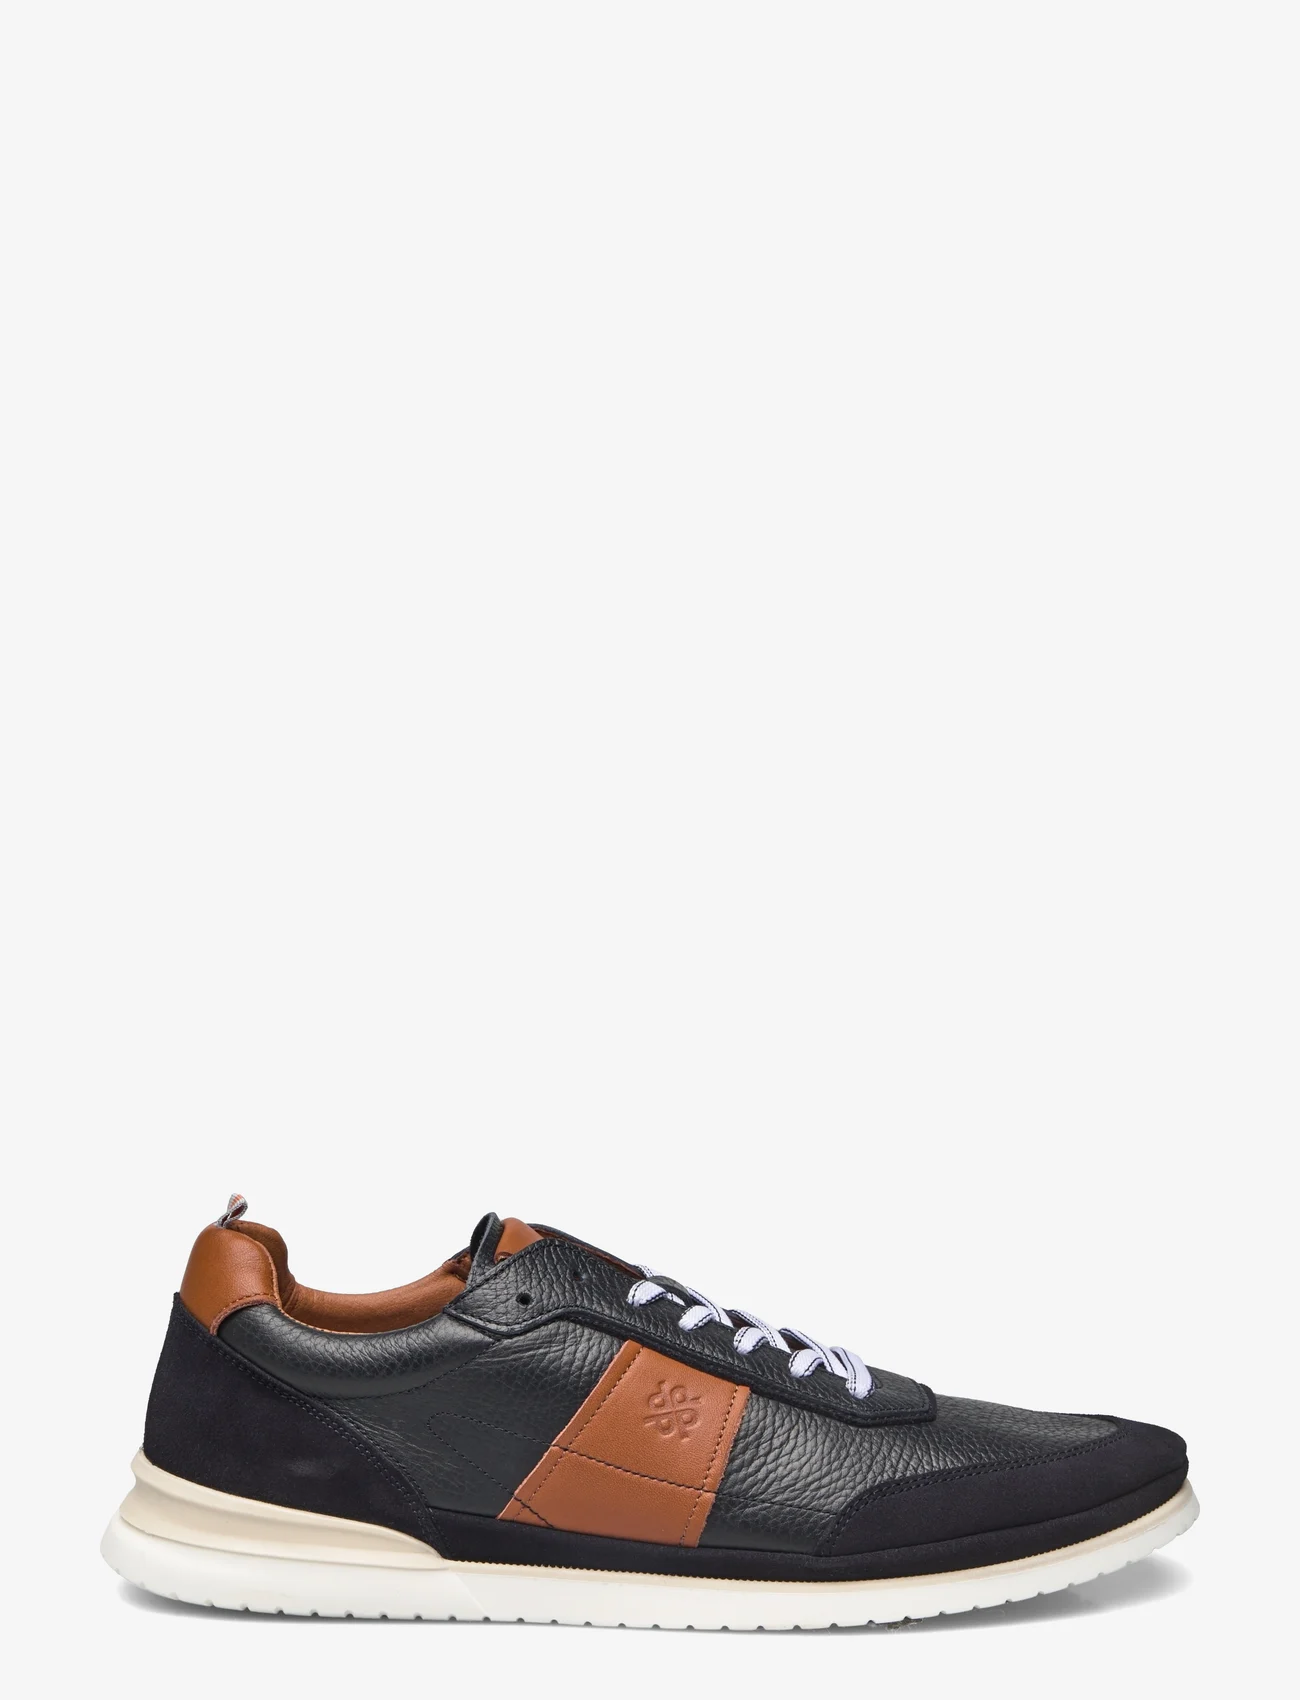 Playboy Footwear - Dan - lave sneakers - navy leather/suede combi - 1